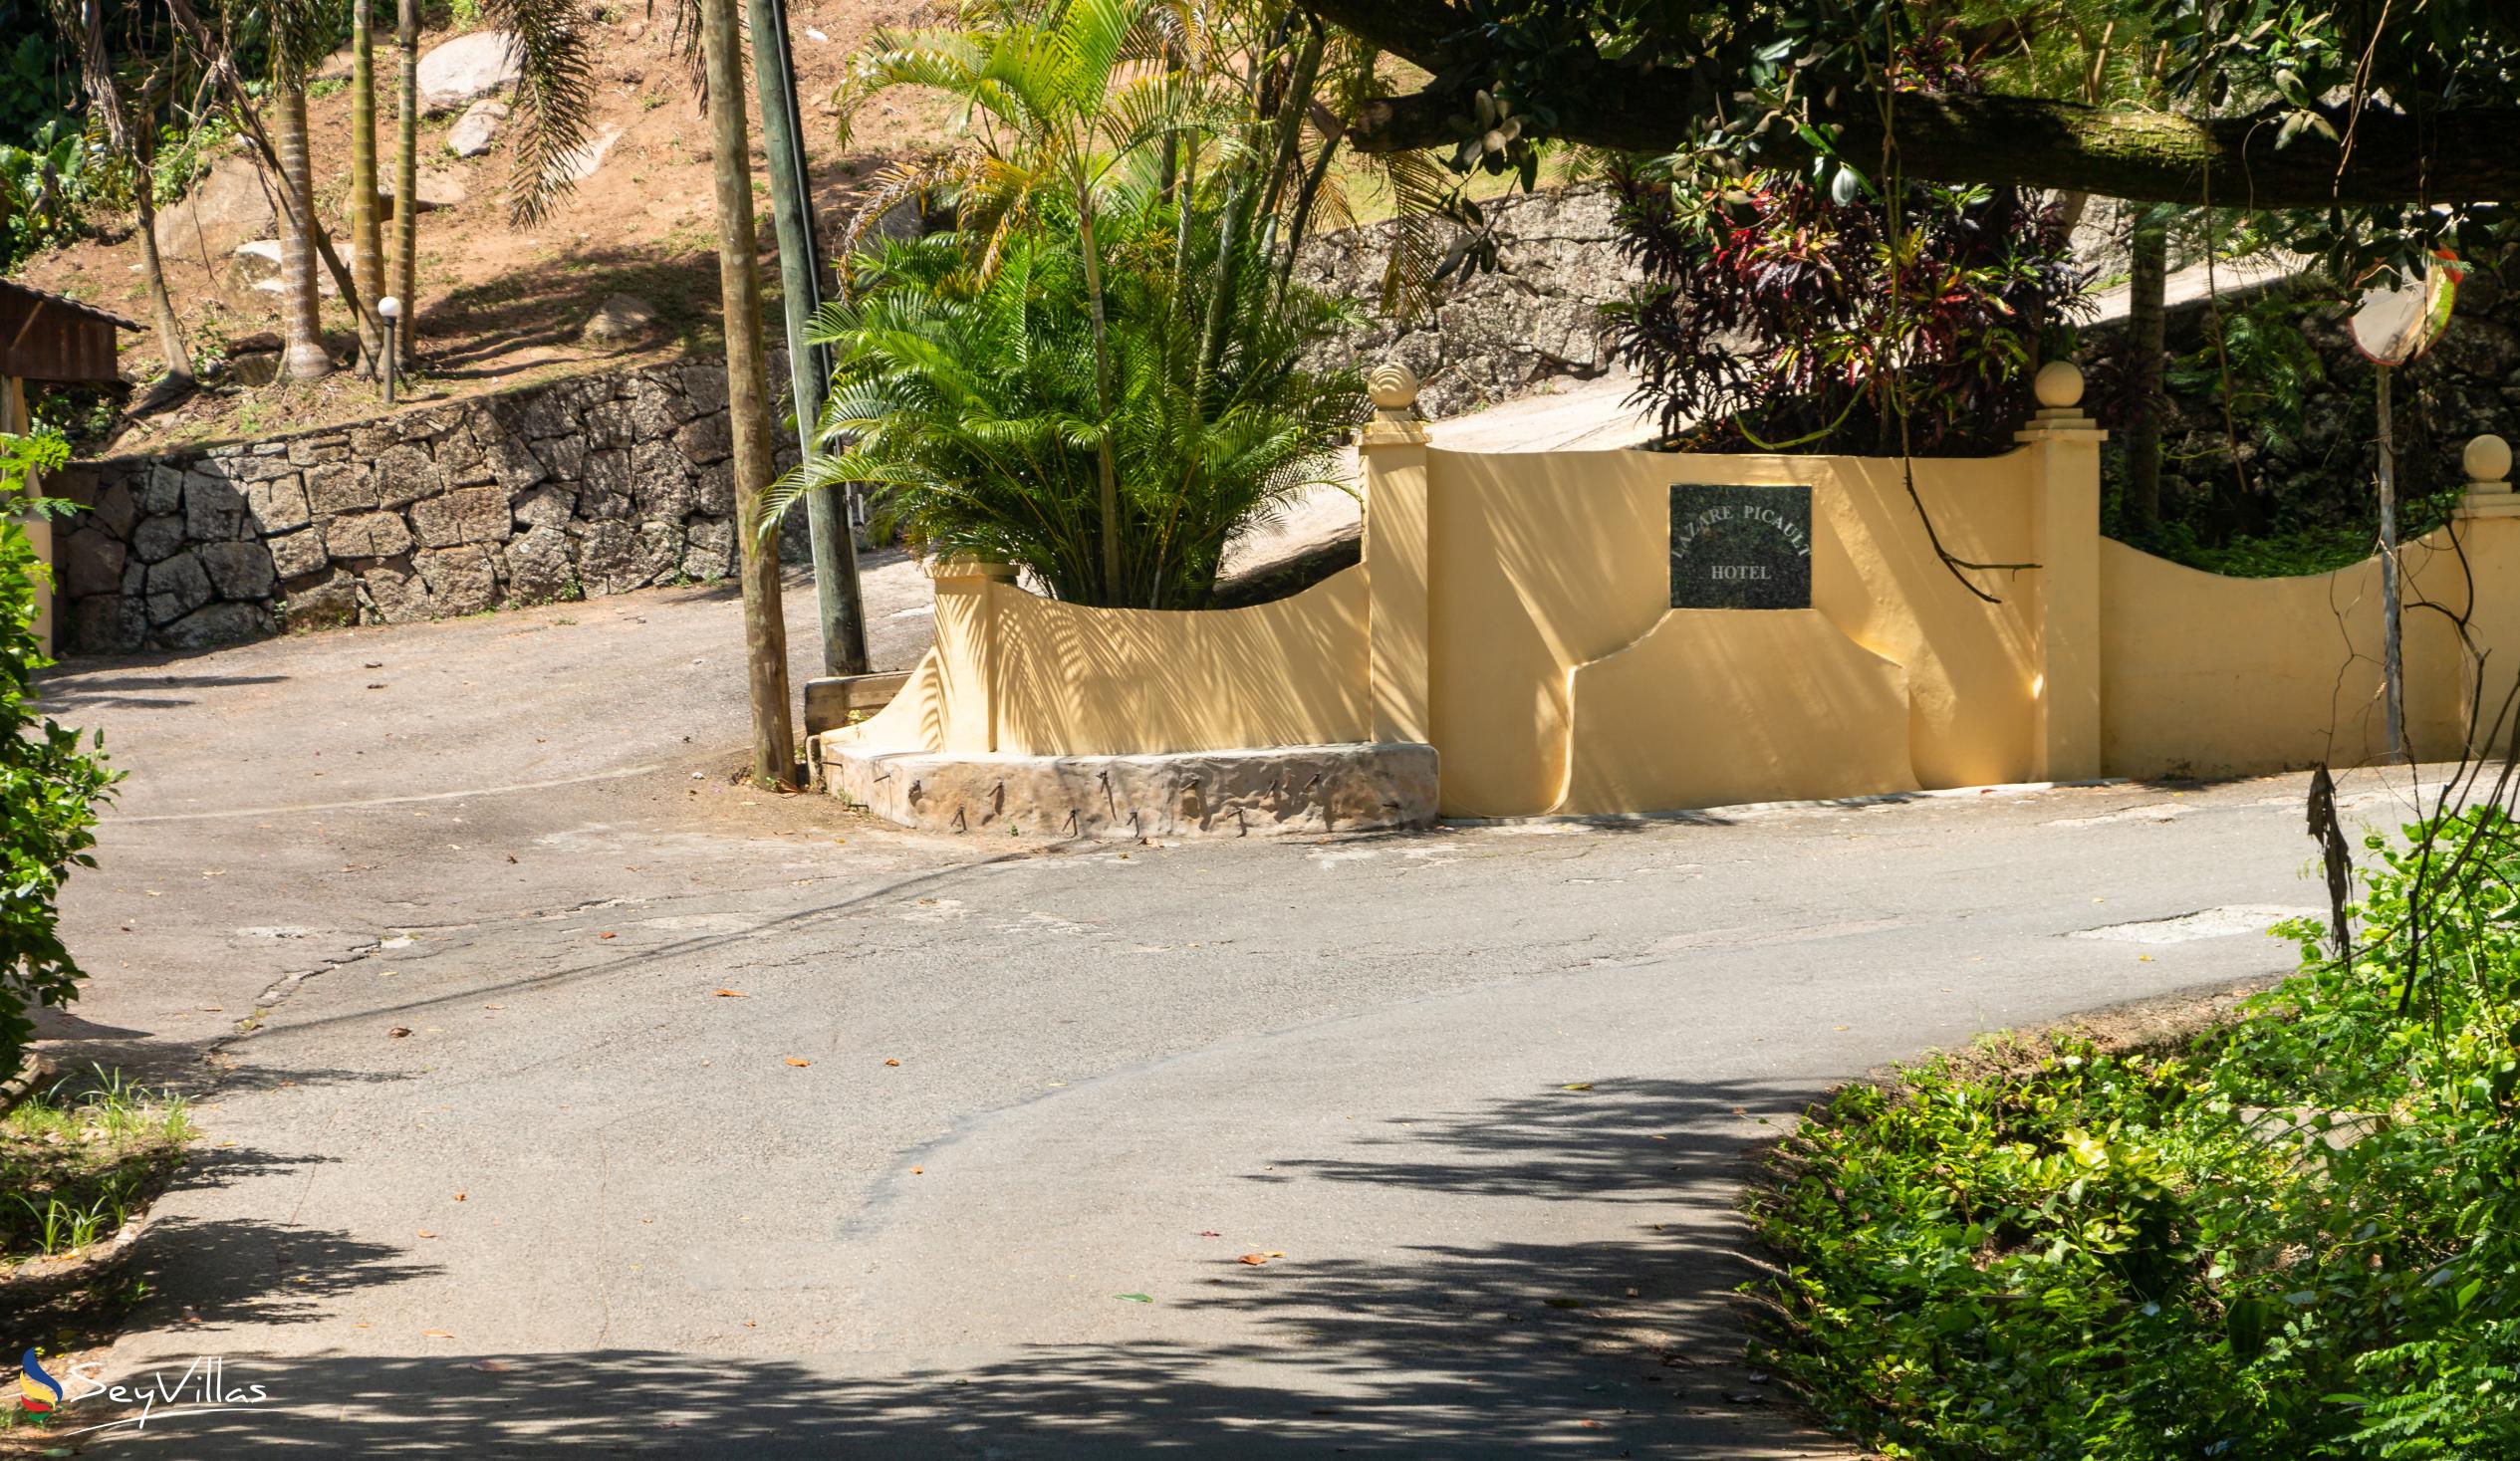 Foto 54: Lazare Picault Hotel - Posizione - Mahé (Seychelles)